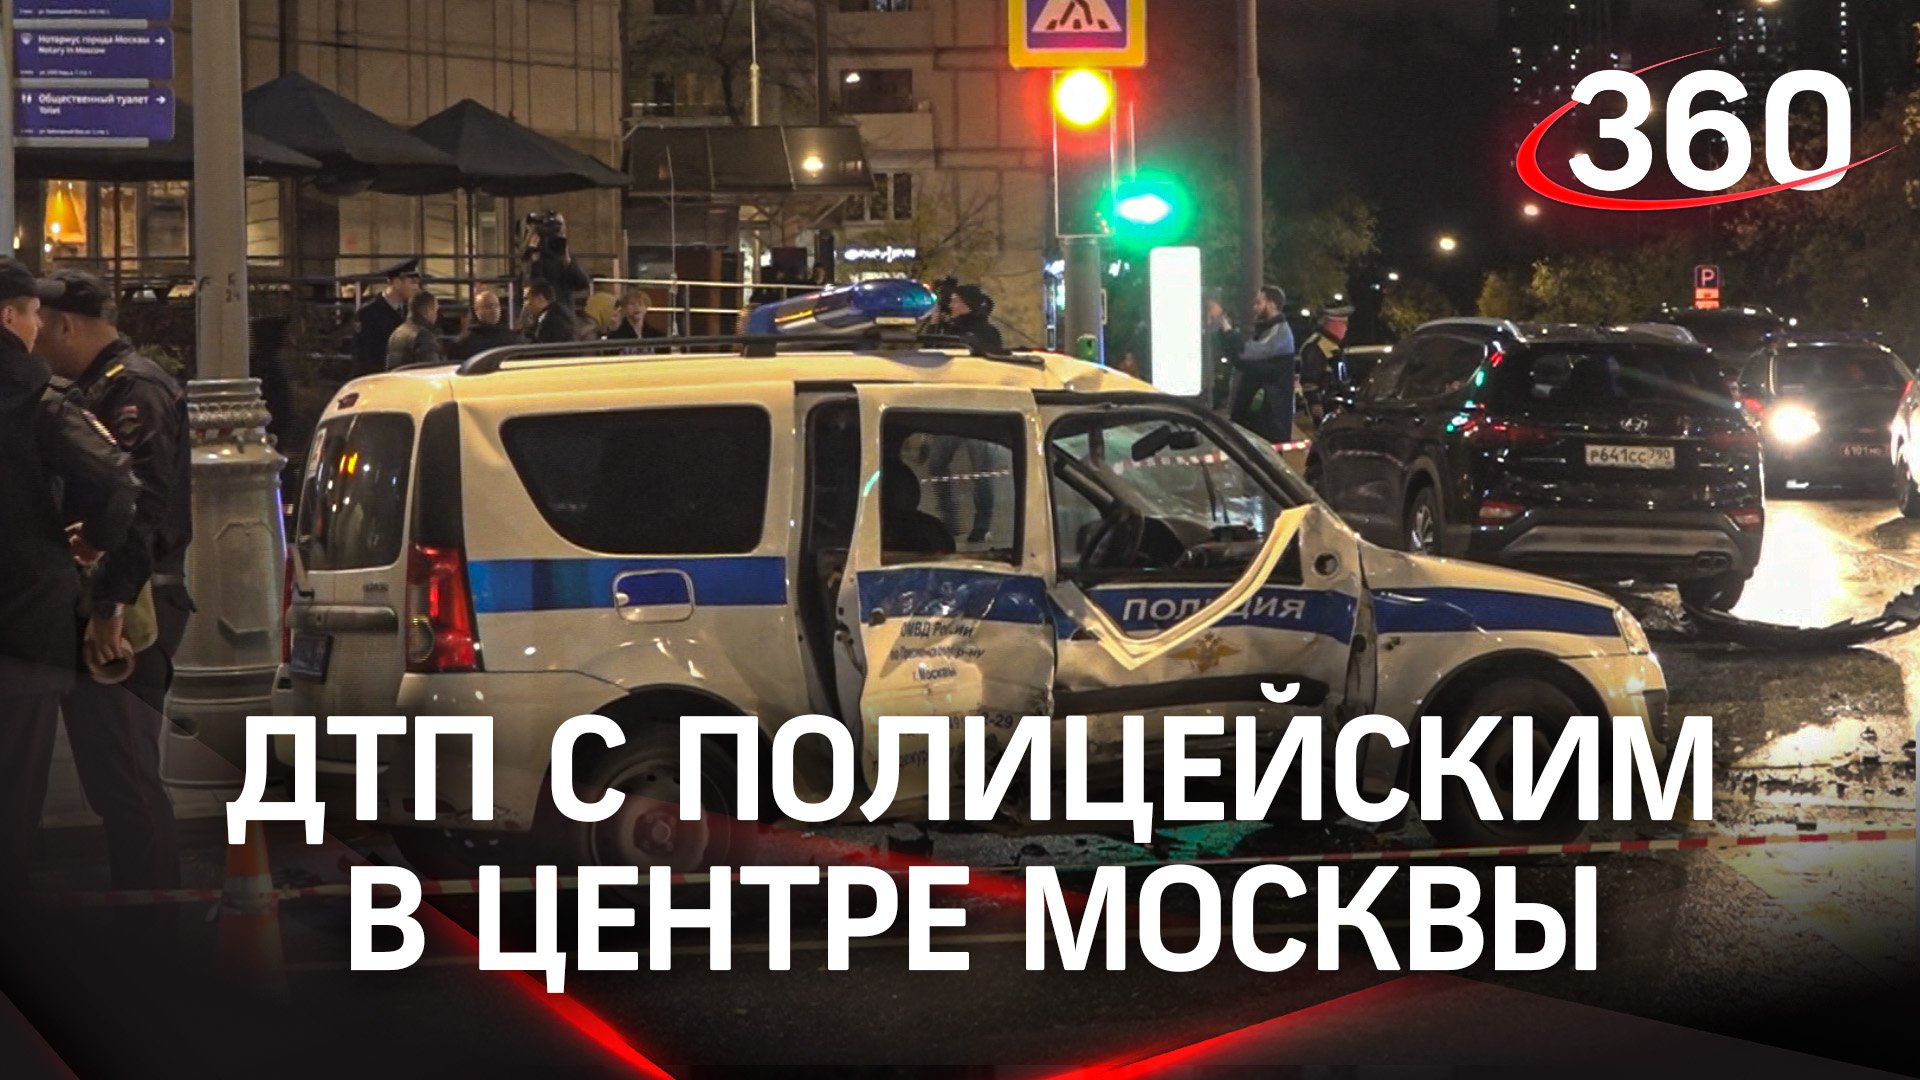 Полицейский пострадал при ДТП в центре Москве. Кадры аварии